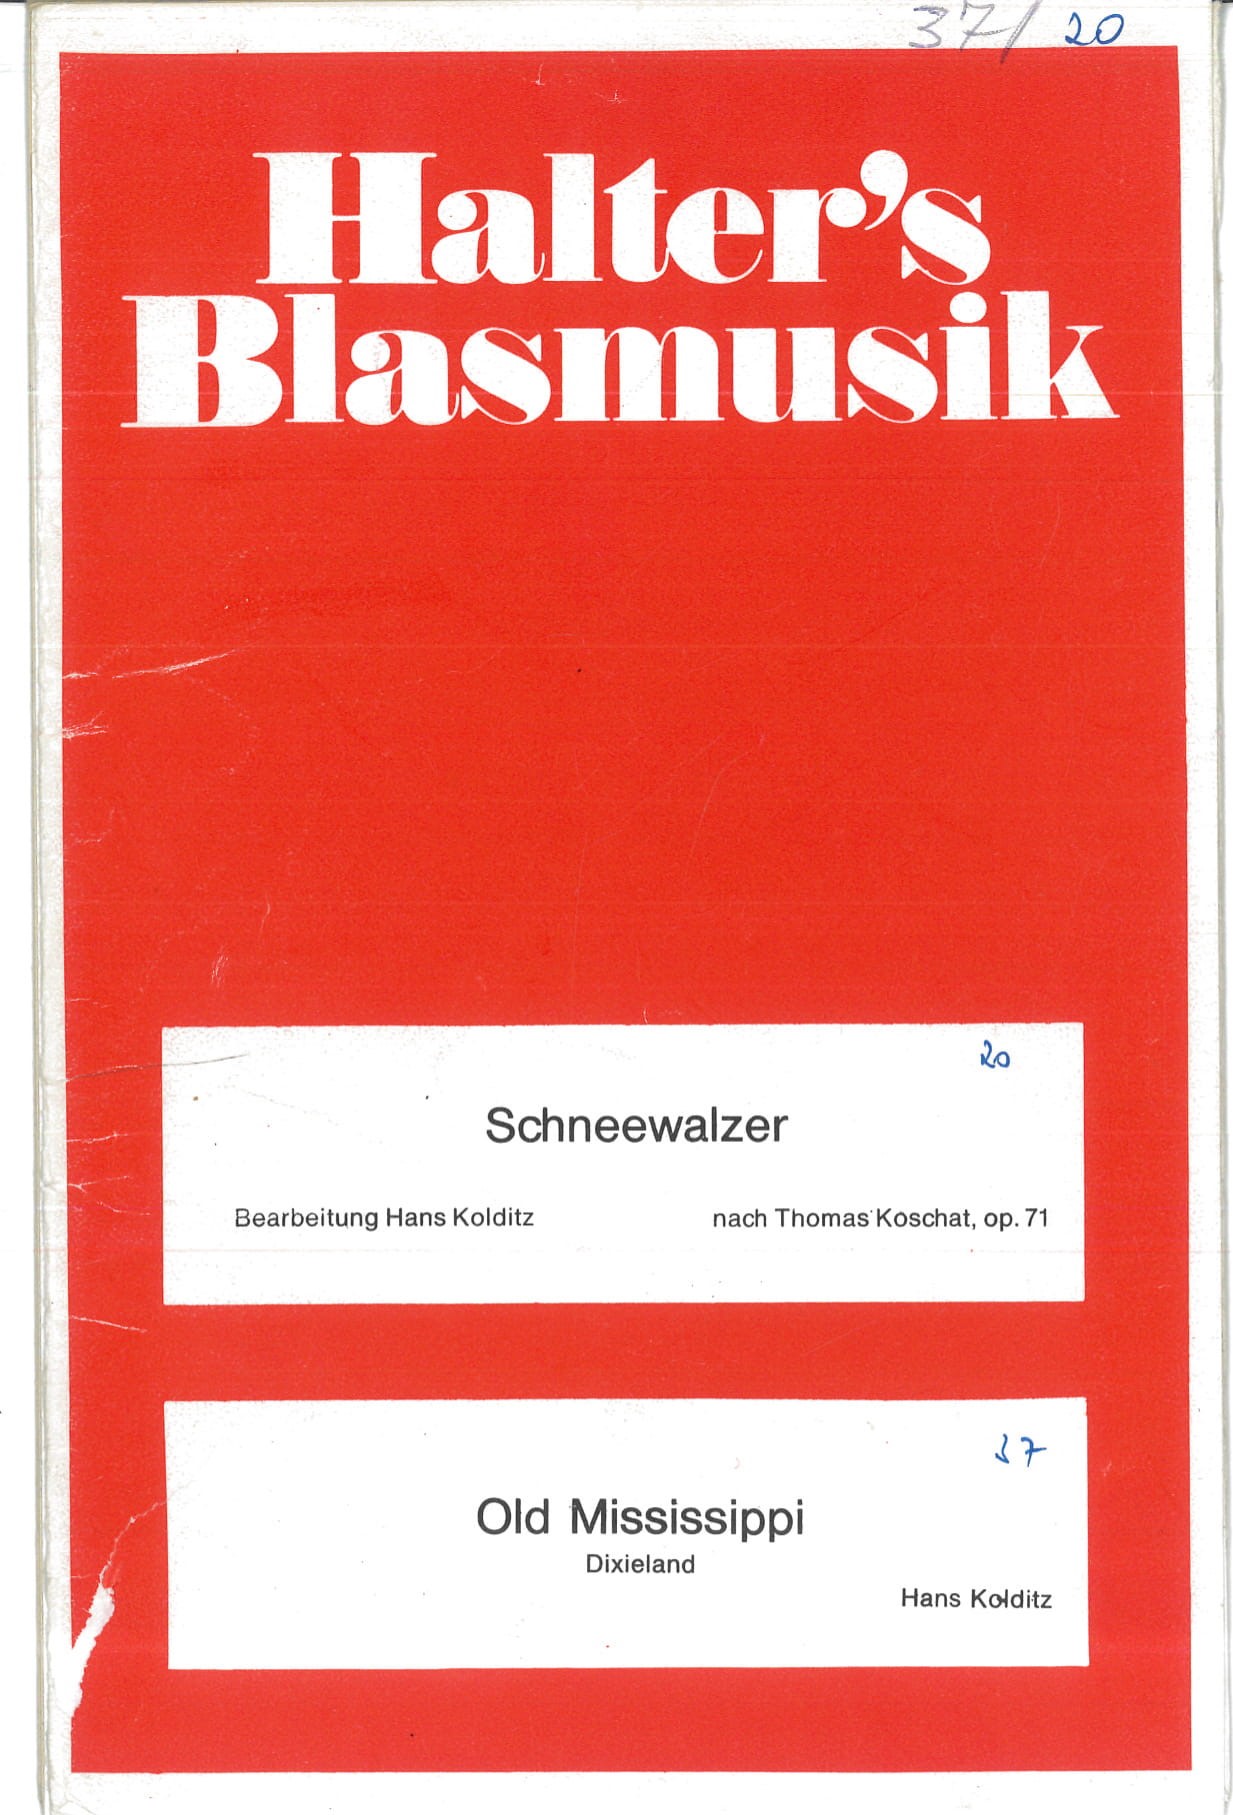 Blasorchesternoten Schneewalzer Cover